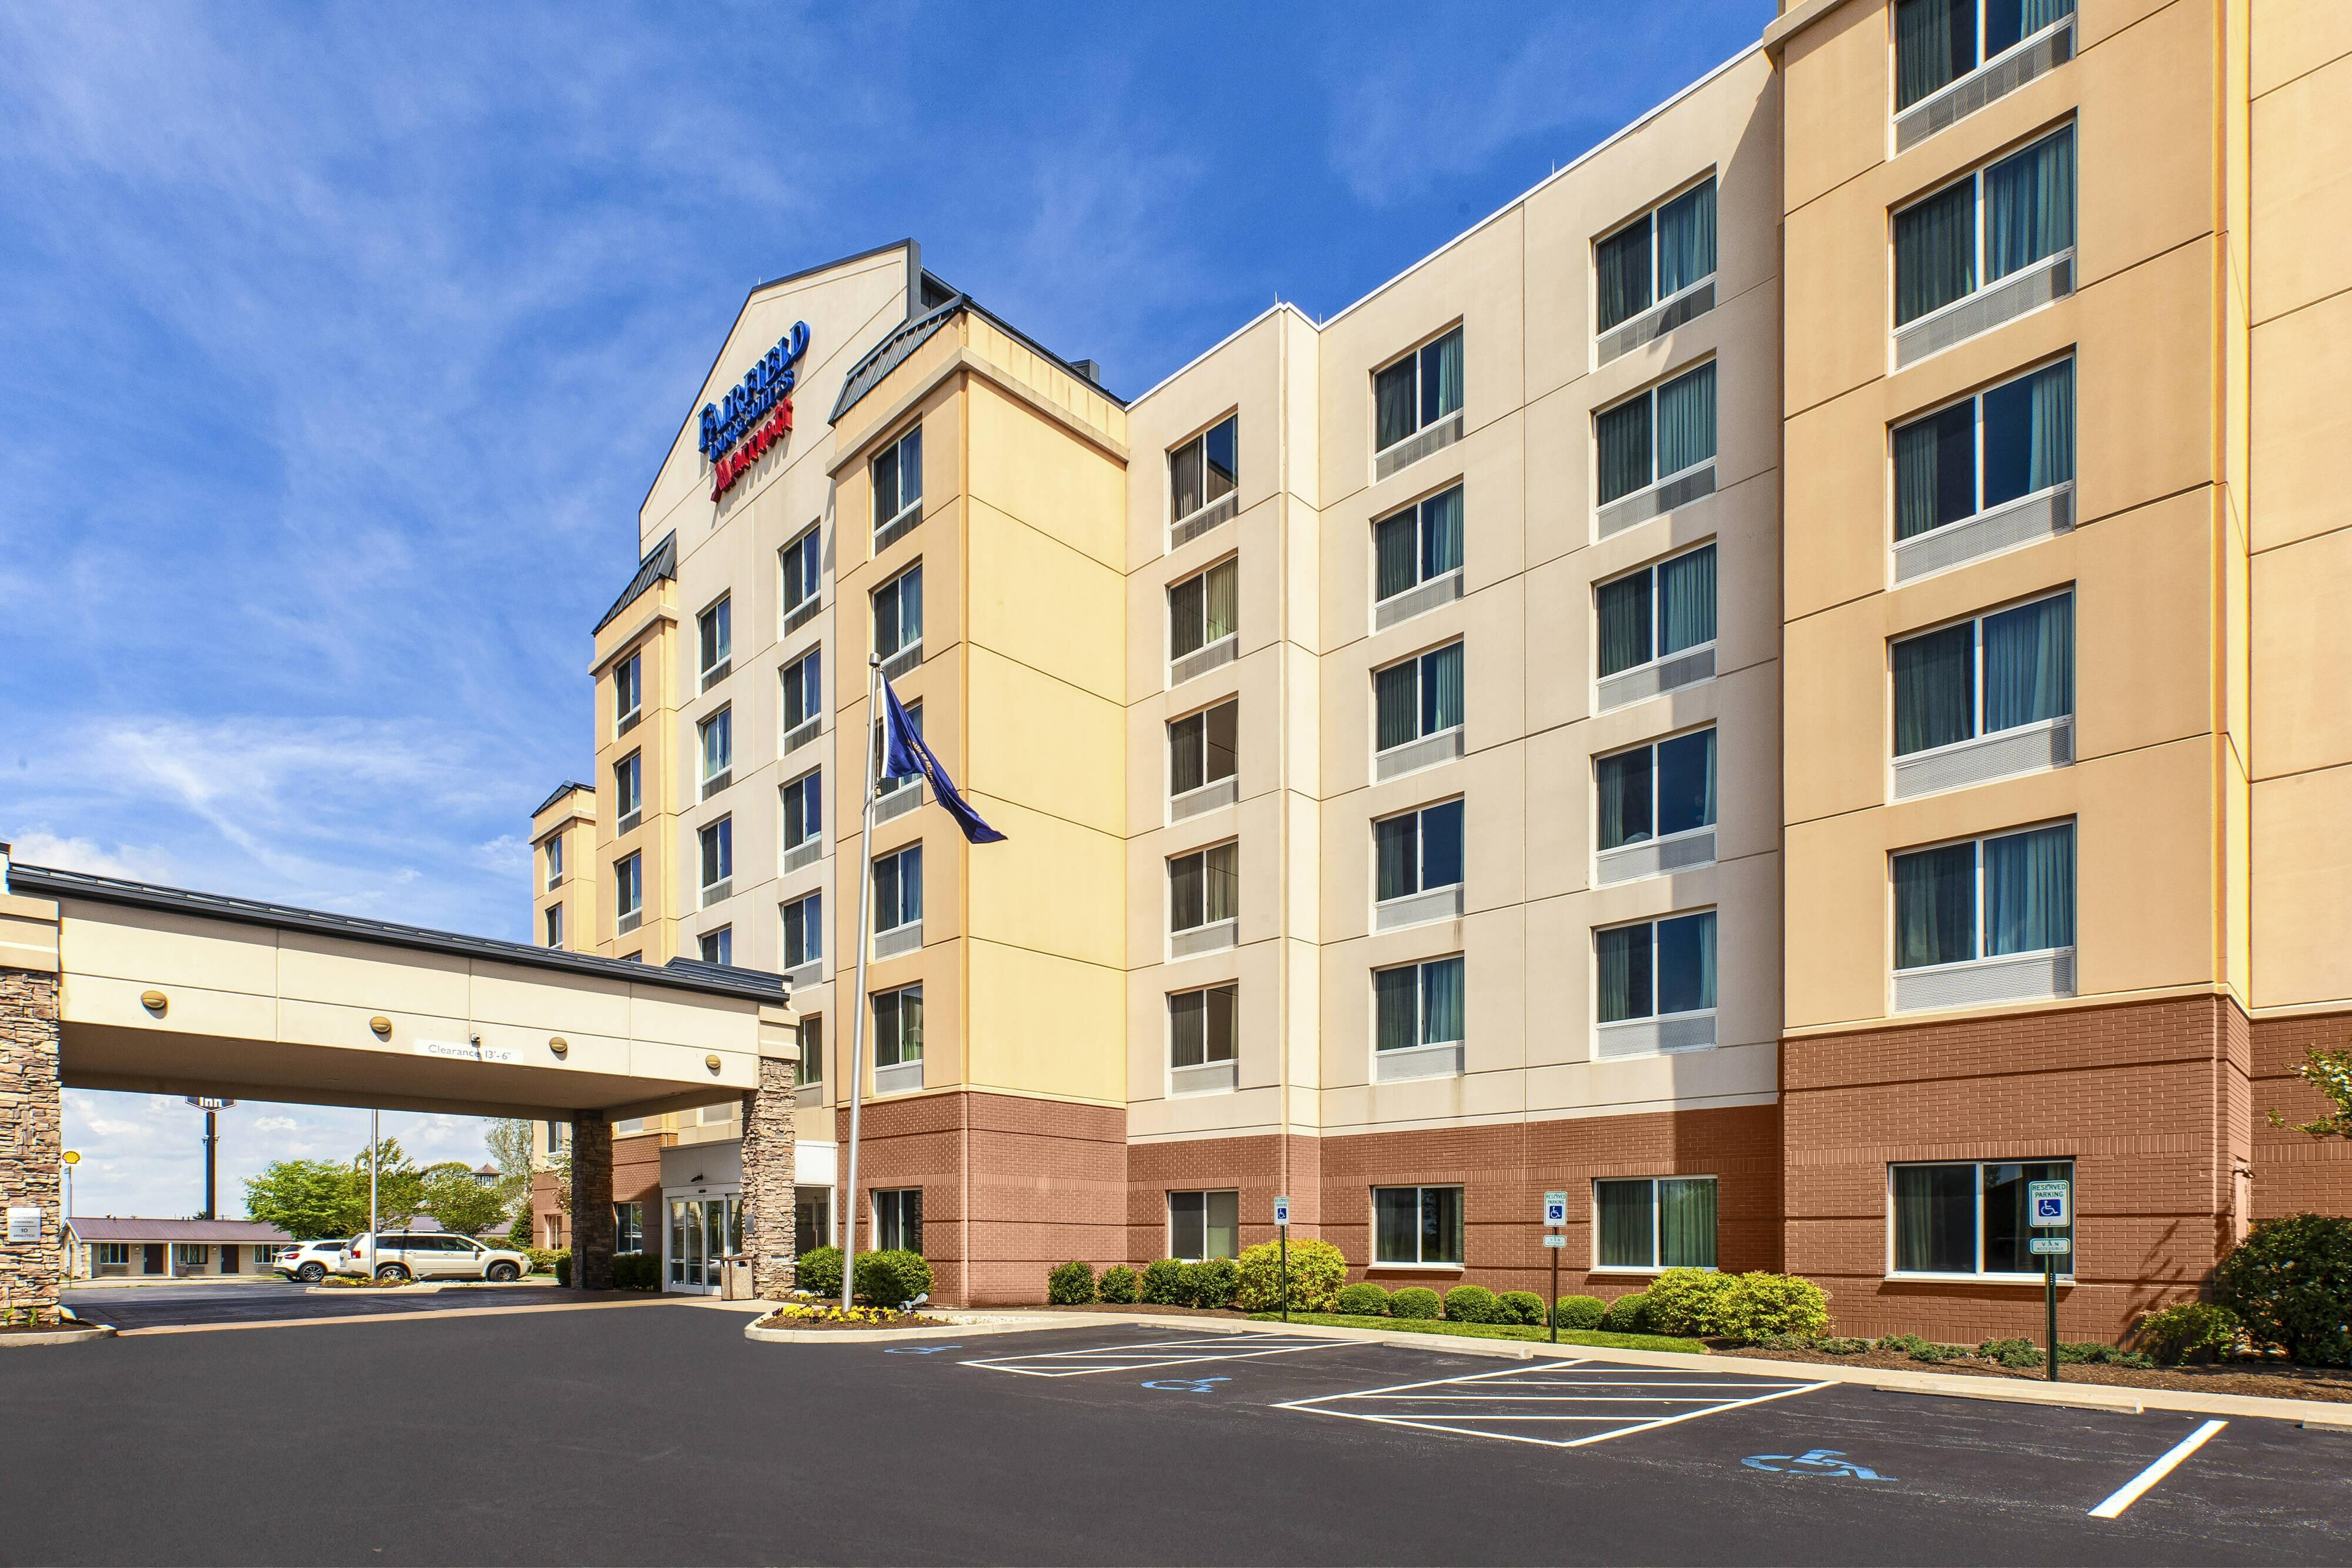 Photo of Fairfield Inn & Suites Lexington North, Lexington, KY